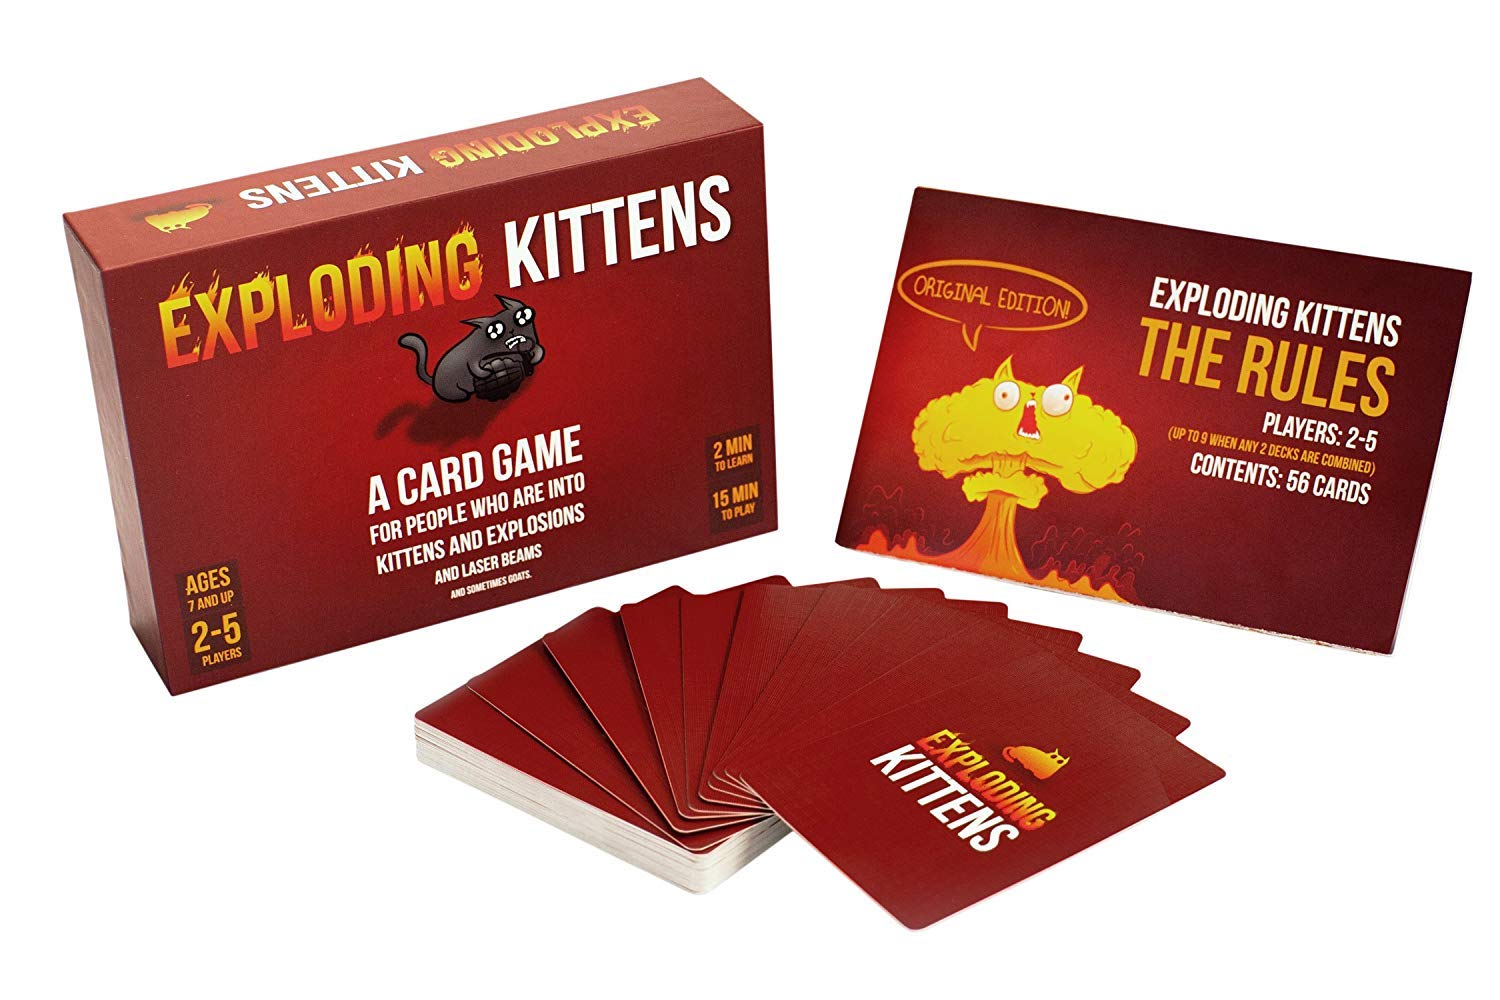 KIDS MANDI - Exploding Kittens card game for children.